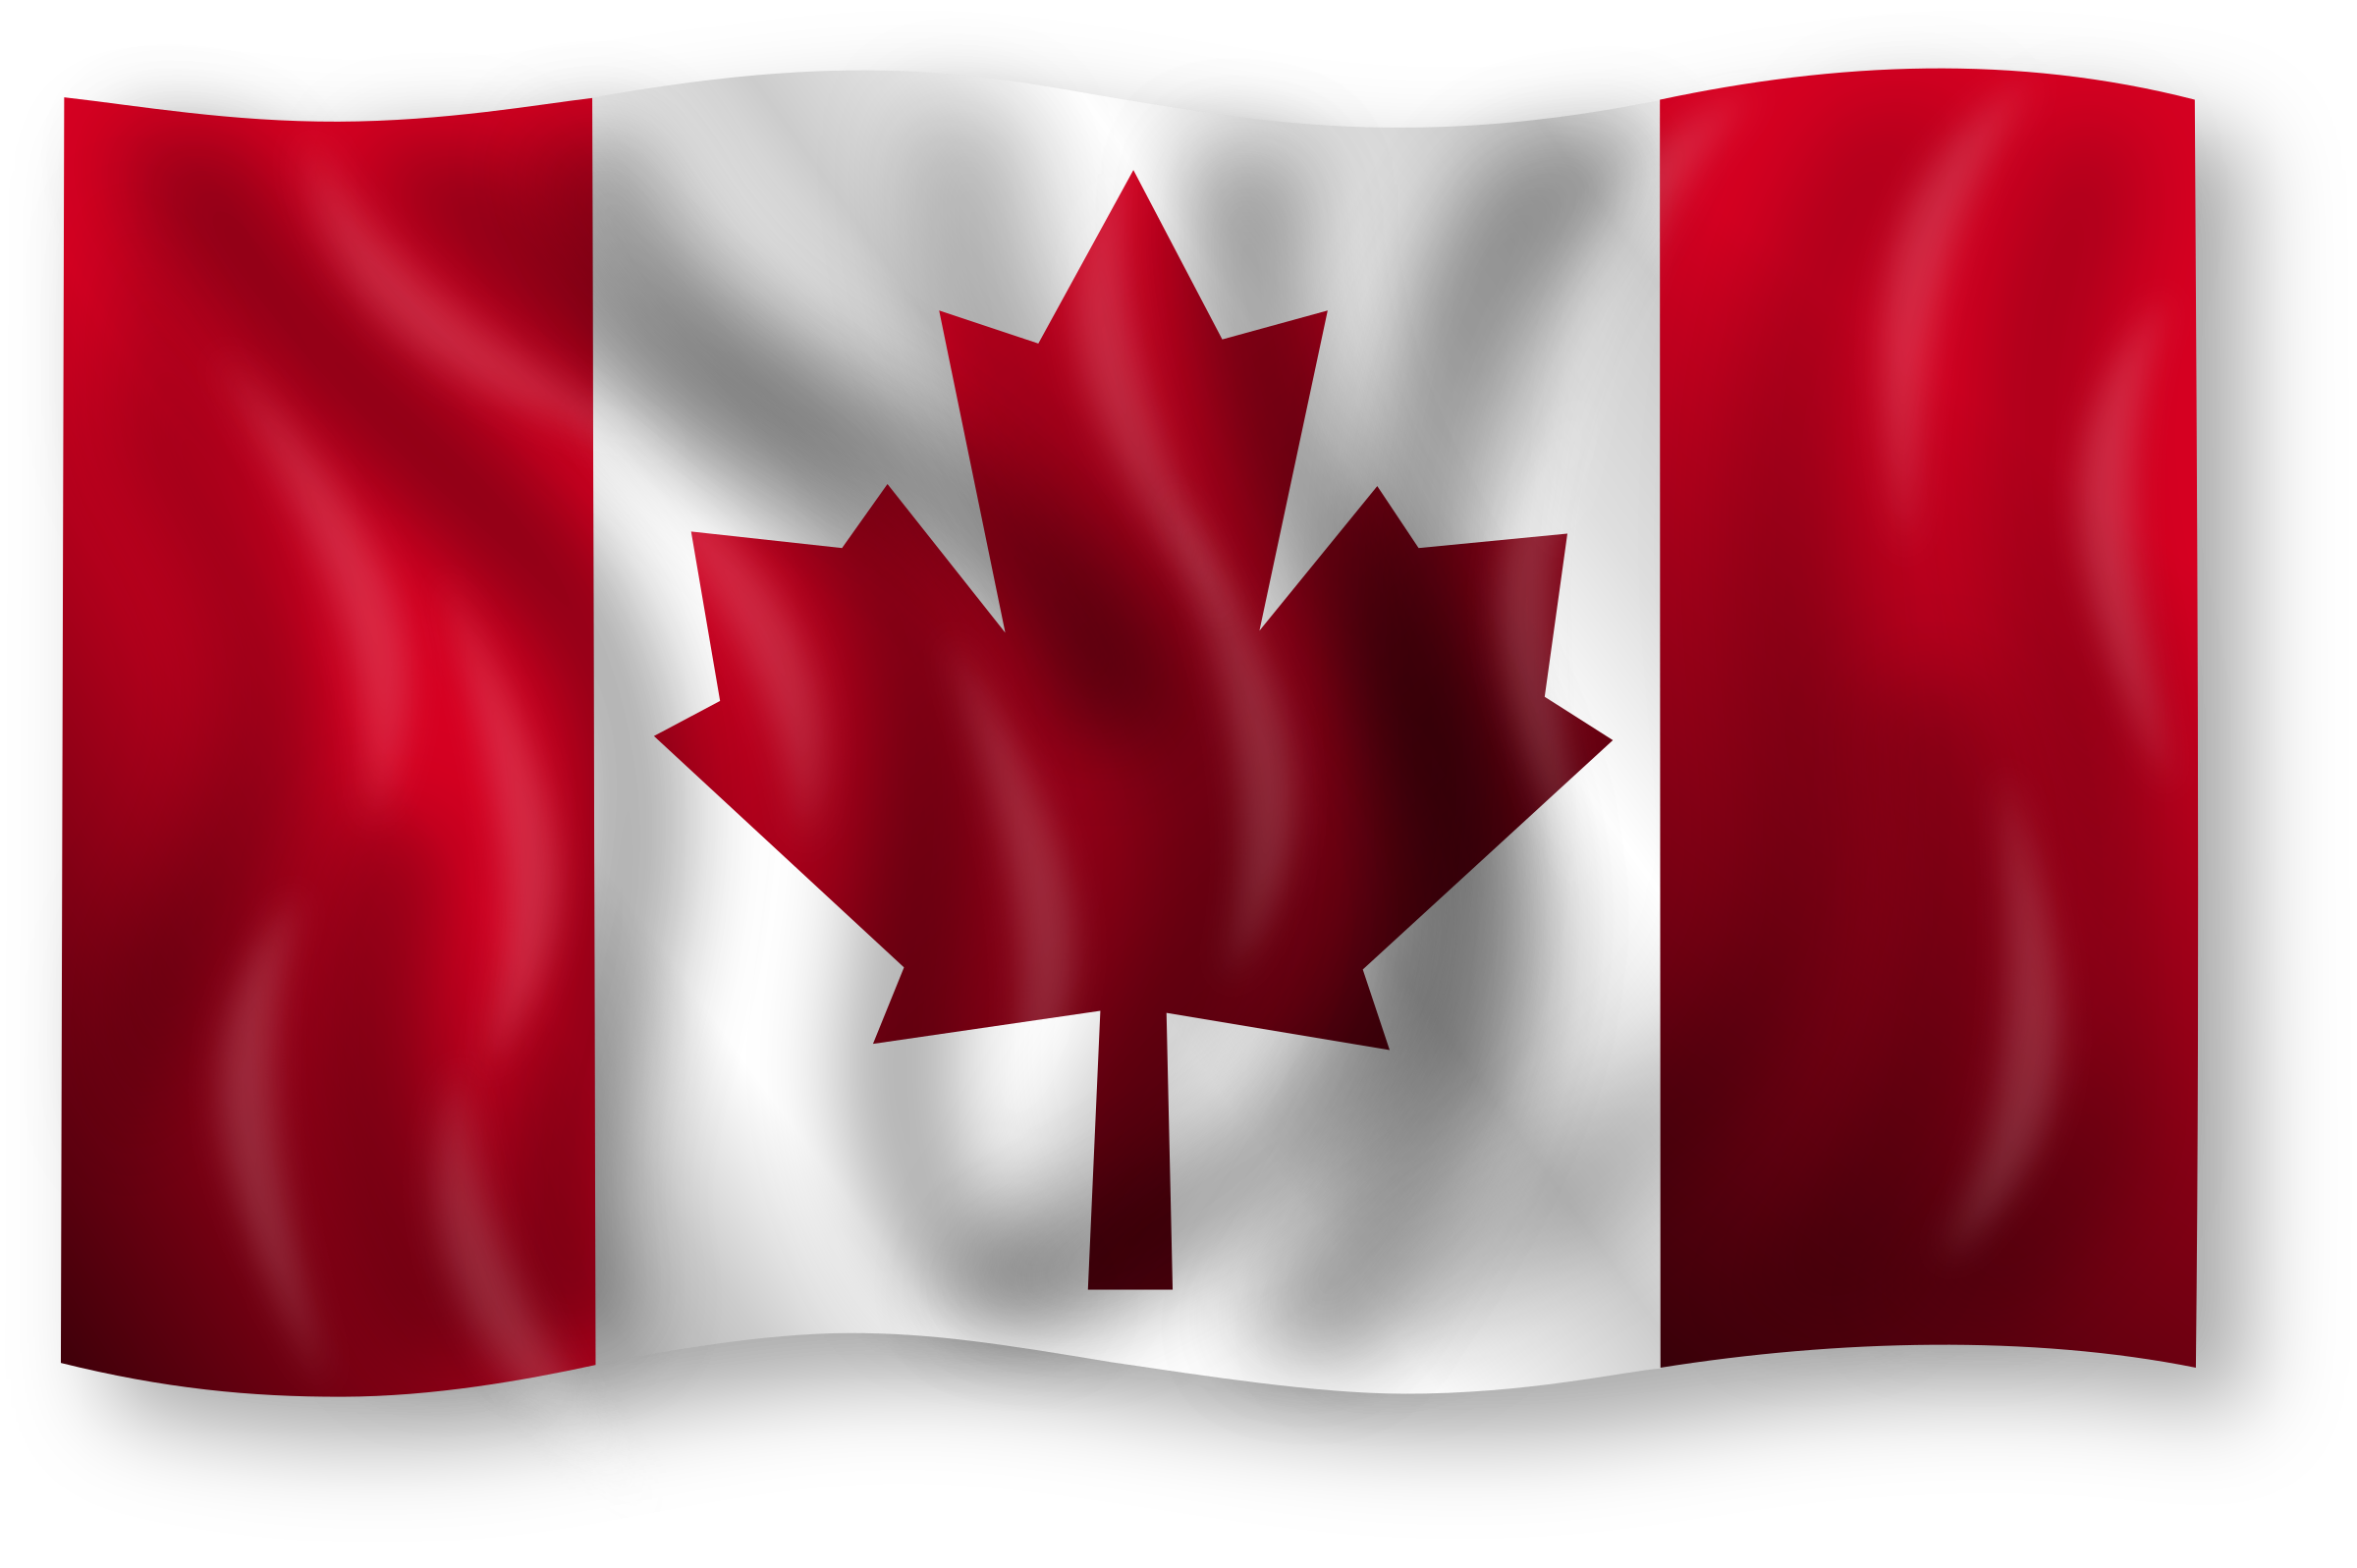 Canada Flag